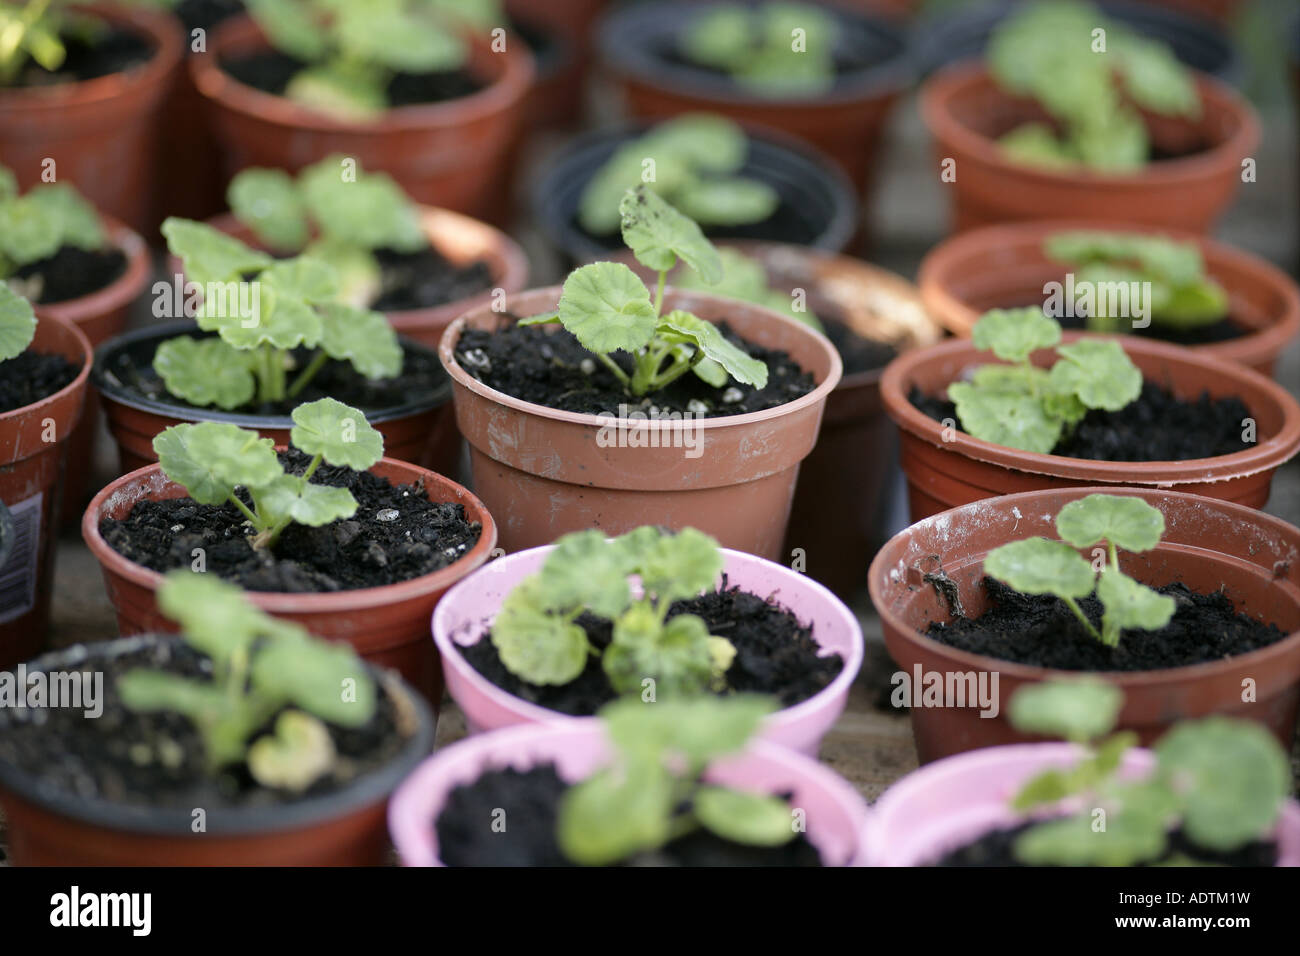 Les plants en pots de géranium Banque D'Images